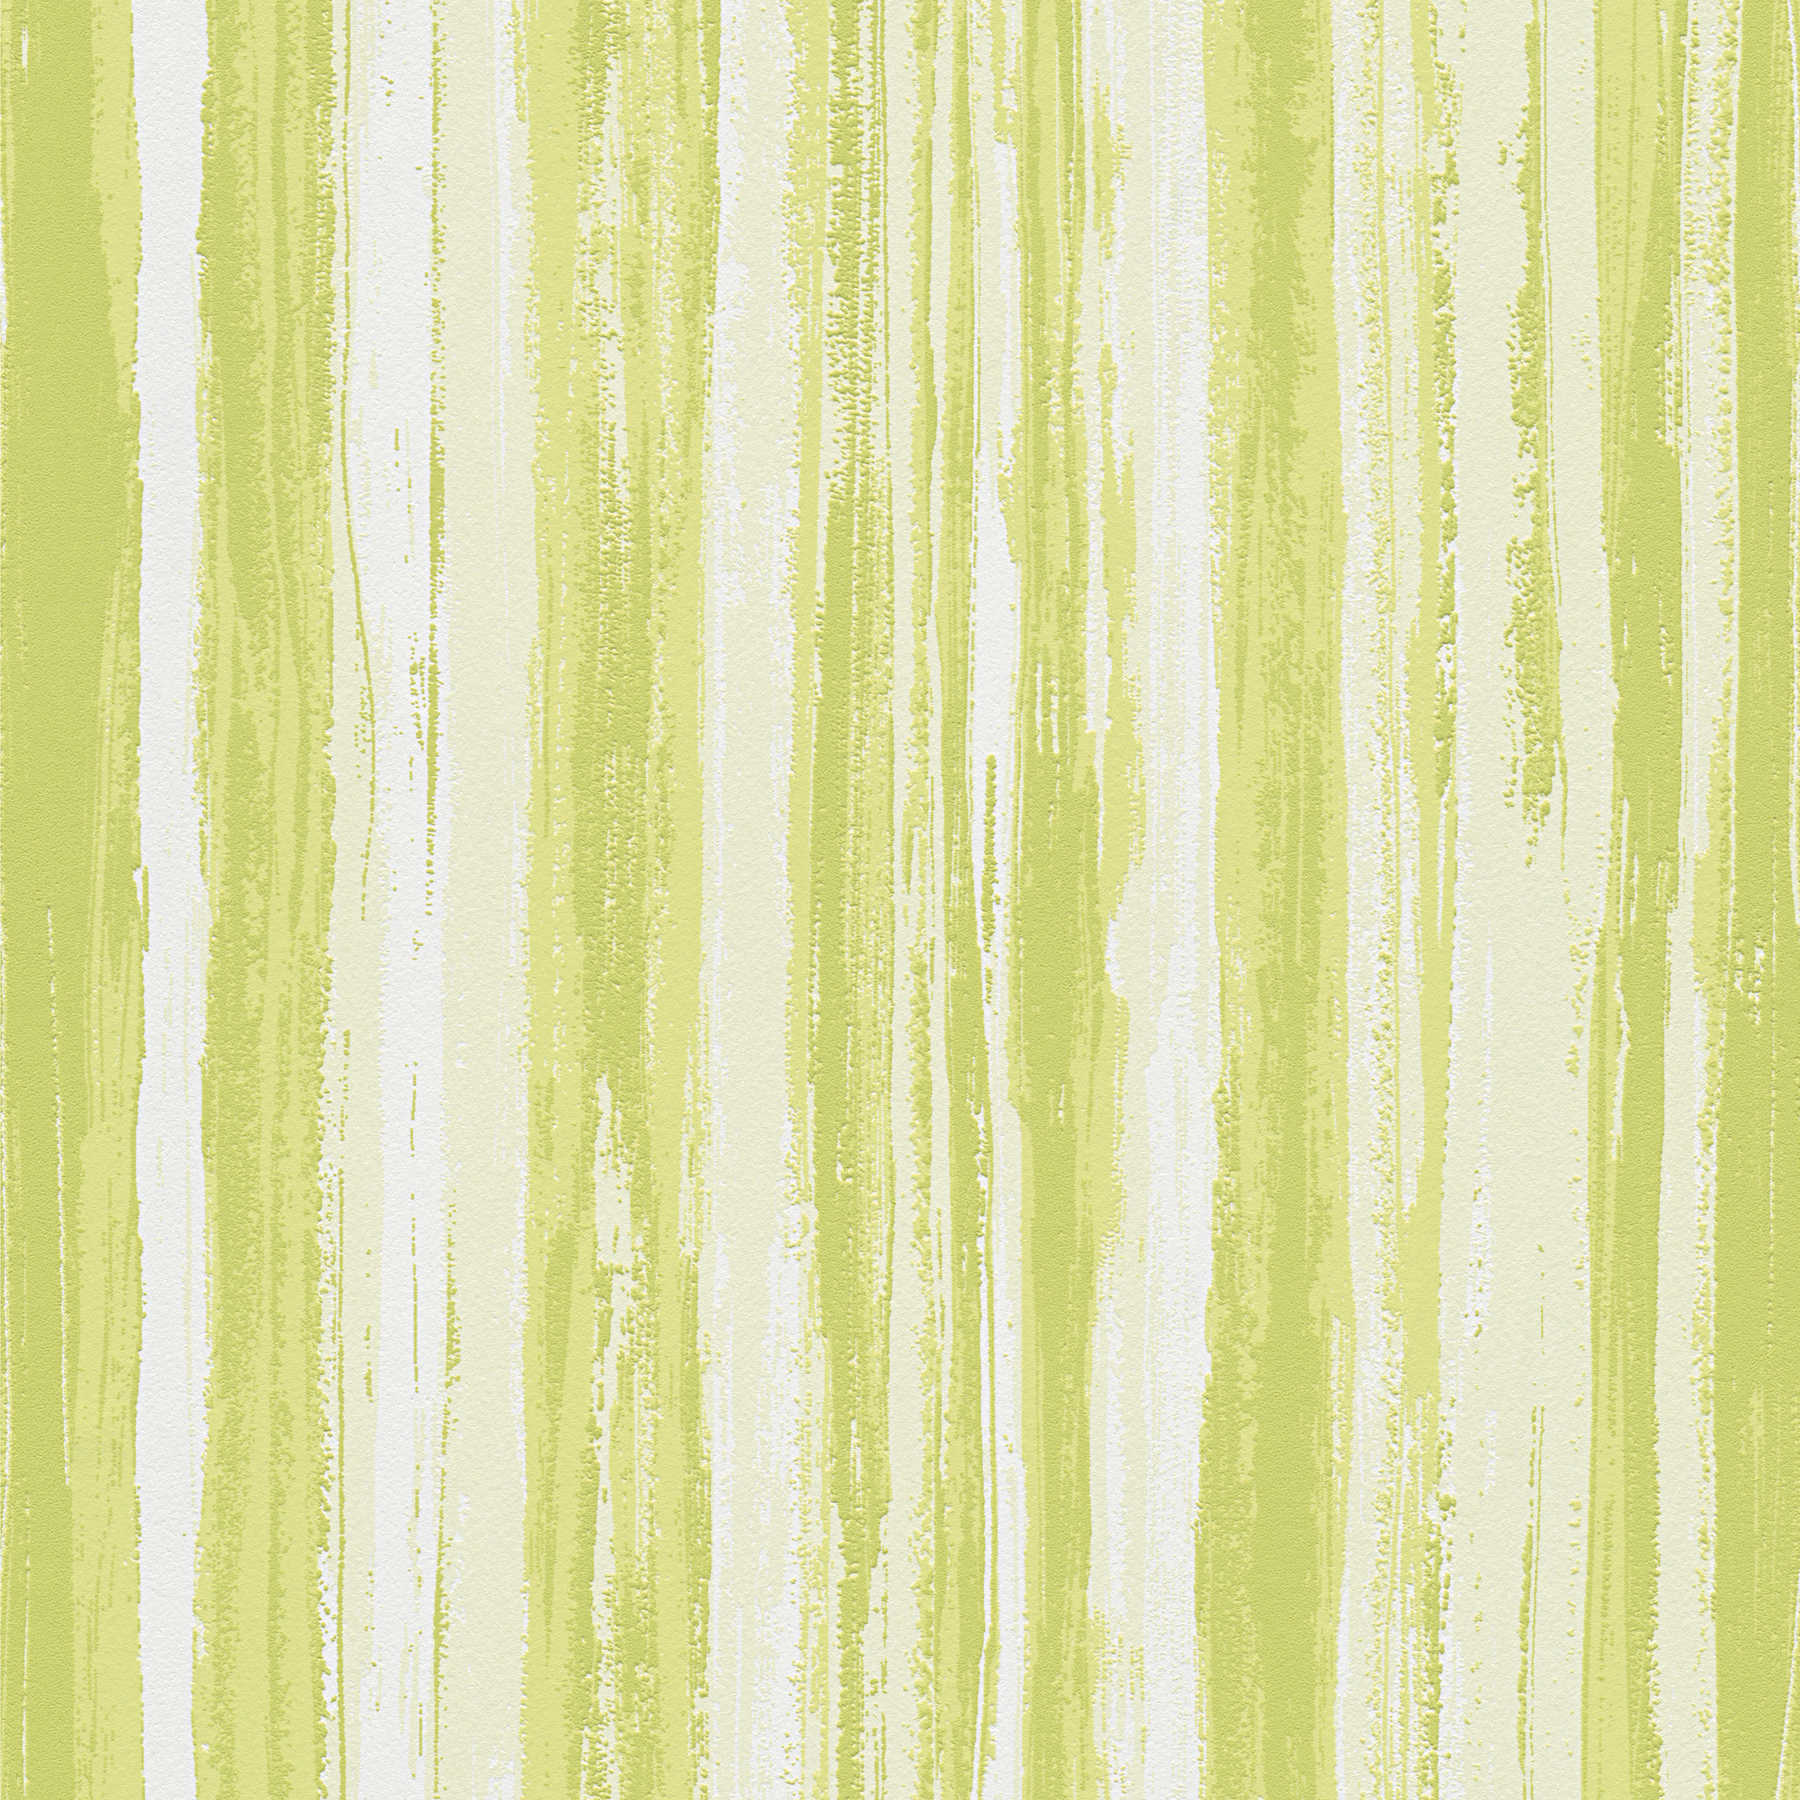             Grüne Tapete mit natürlichem Linienmuster – Grün, Weiß
        